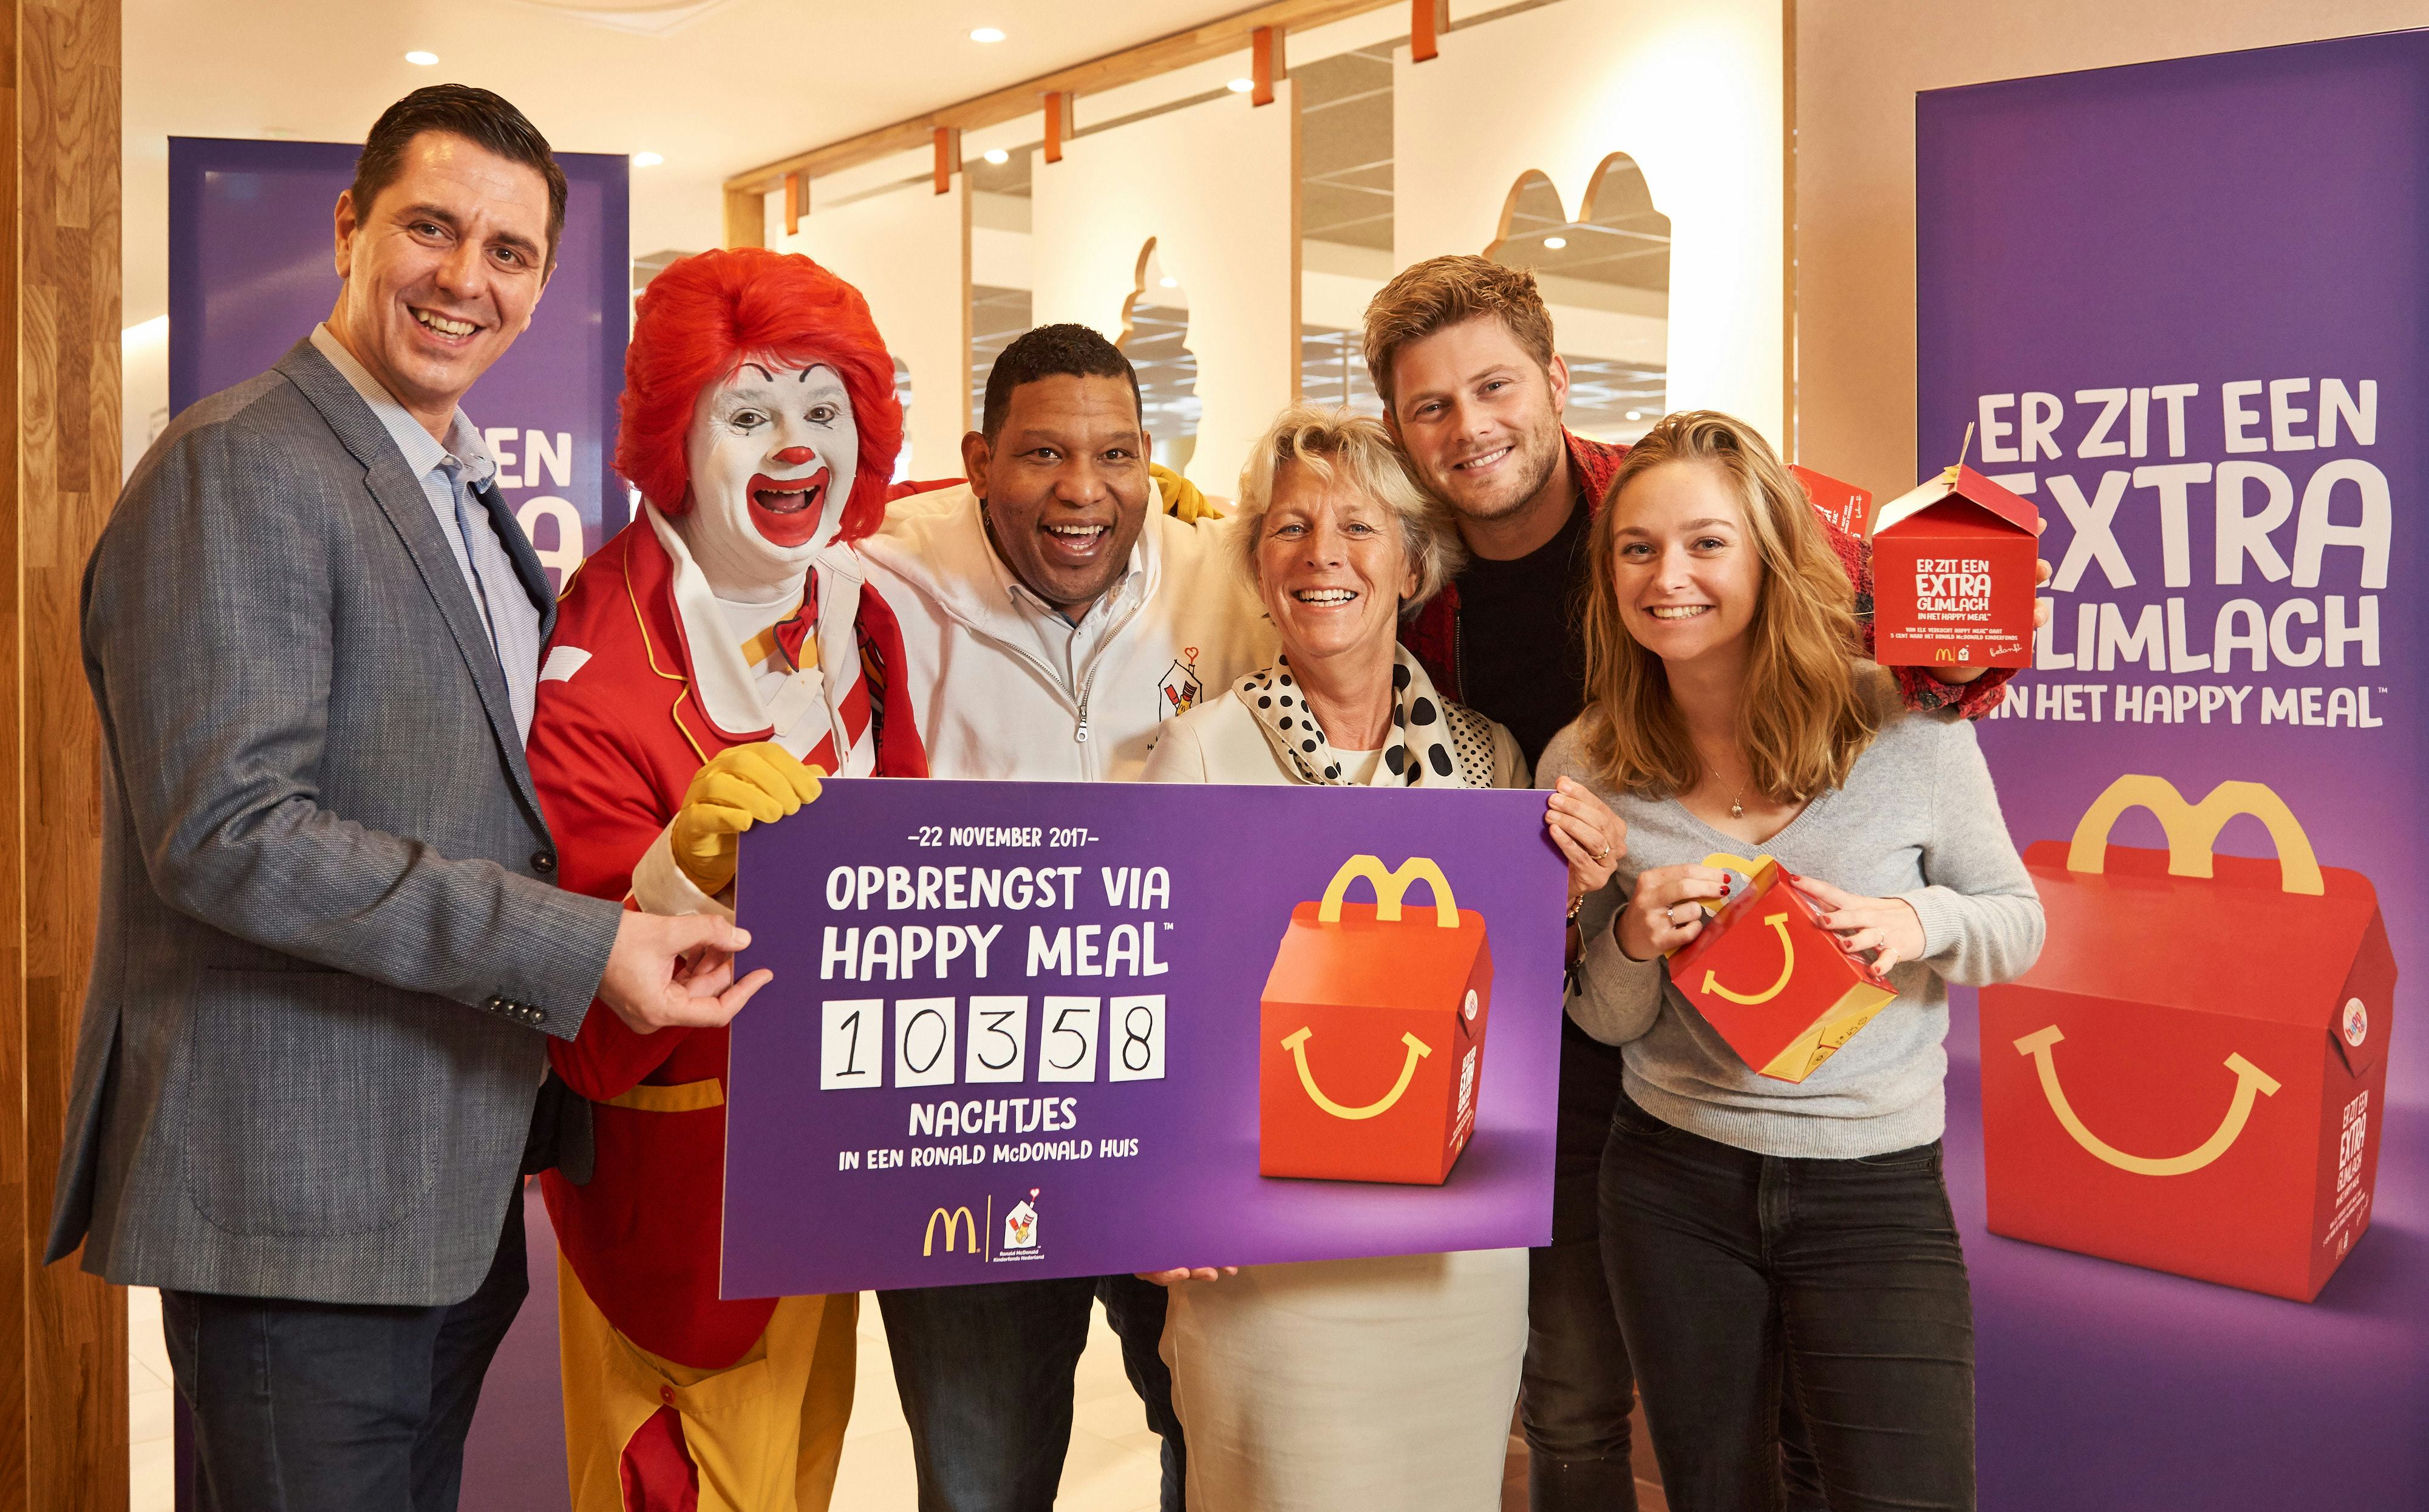 McDonald's doneert ruim 10 duizend overnachtingen voor ouders van zieke kinderen